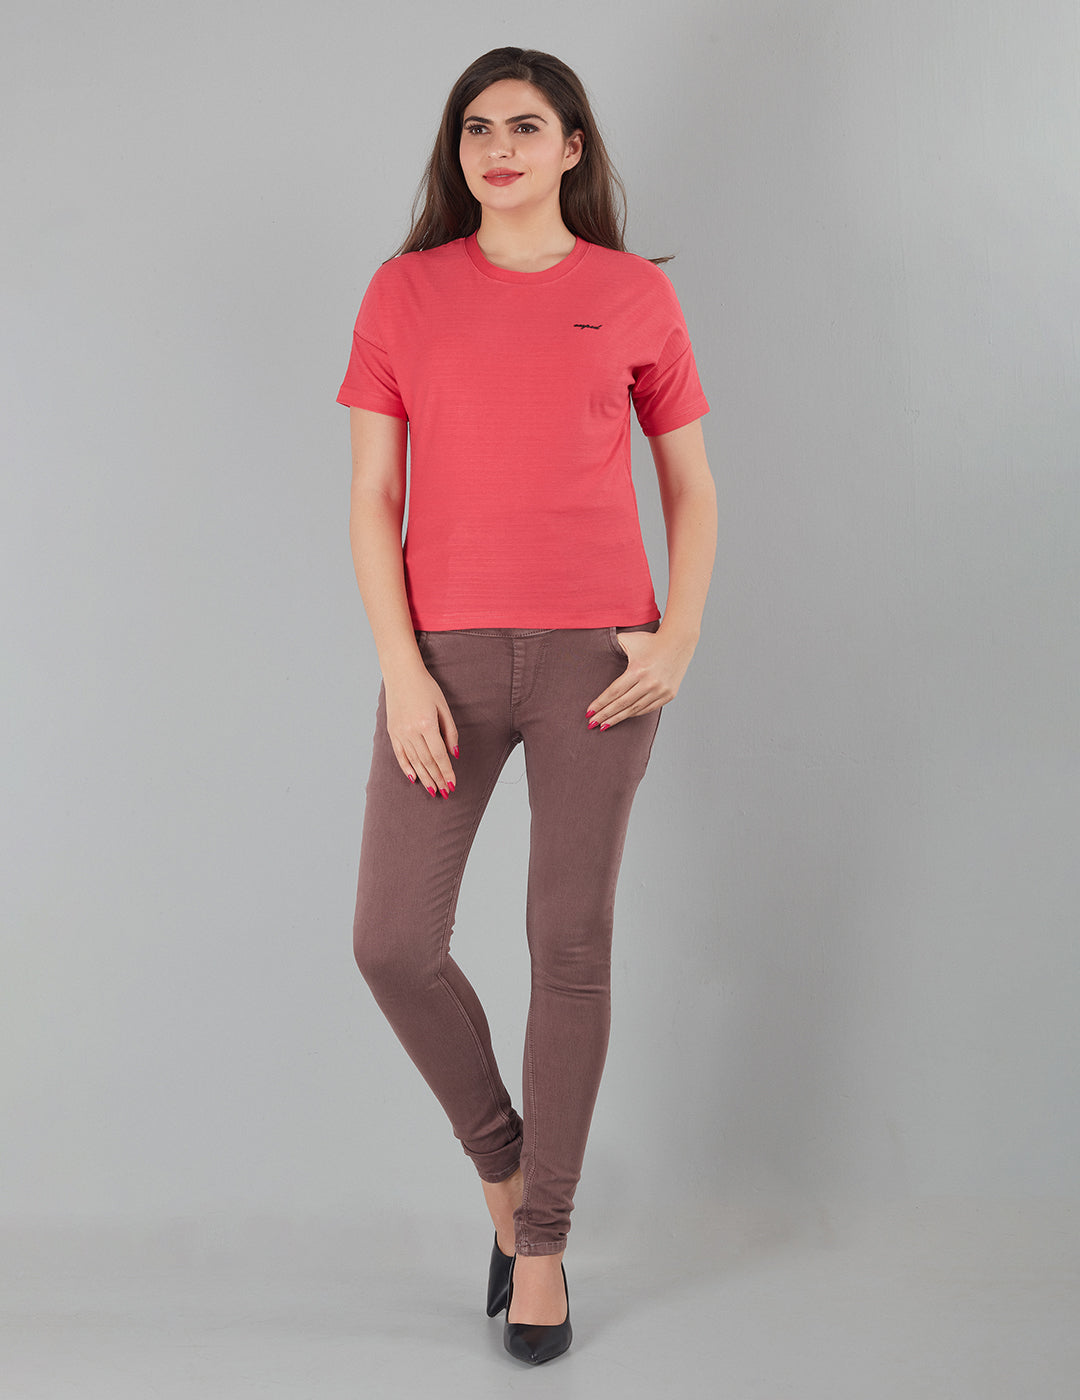 Women Plain Short T-shirts - Hot Pink